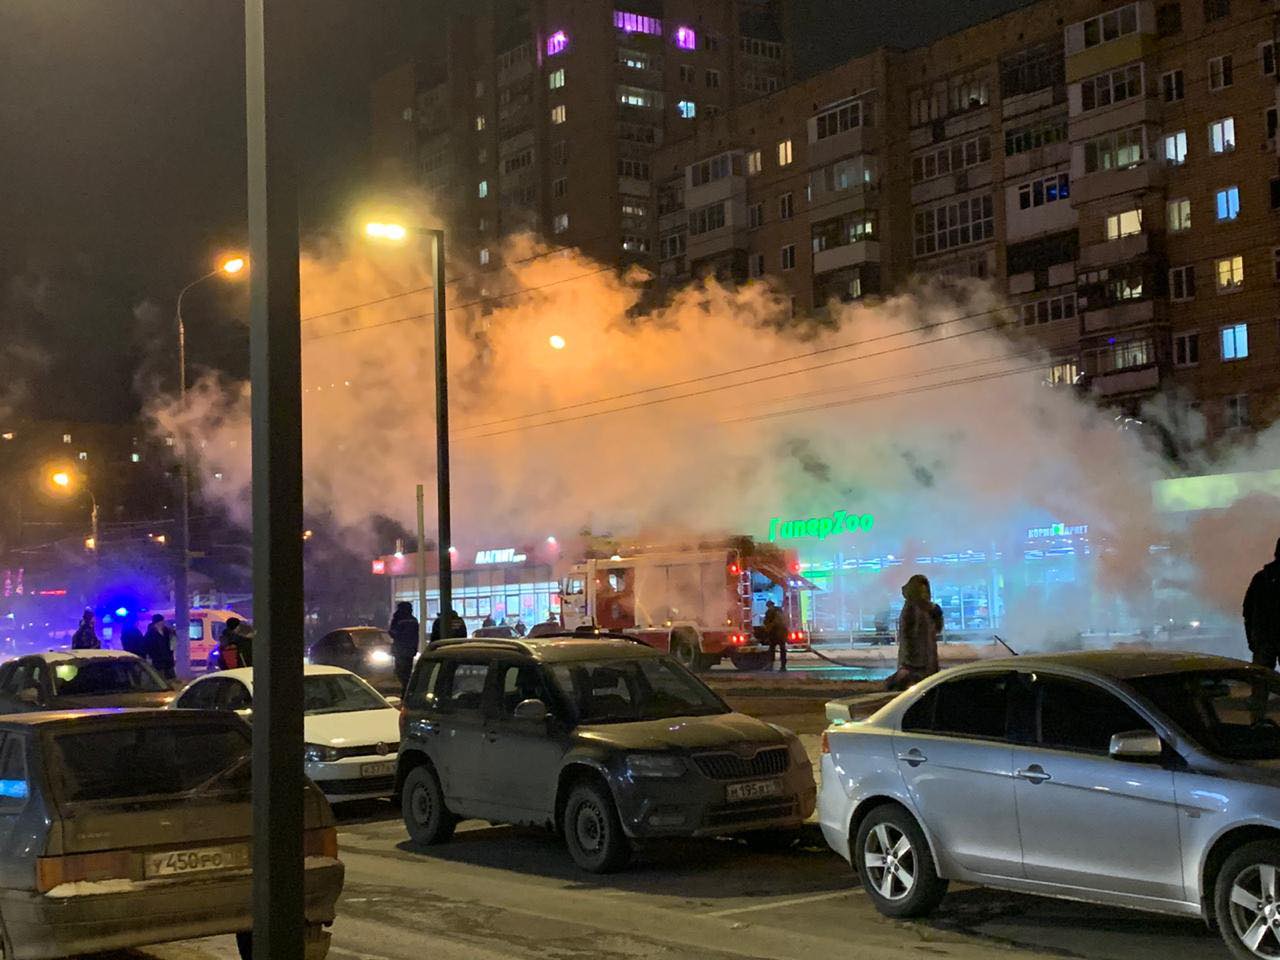 

16 пассажиров эвакуировались из загоревшегося автобуса в Ижевске

